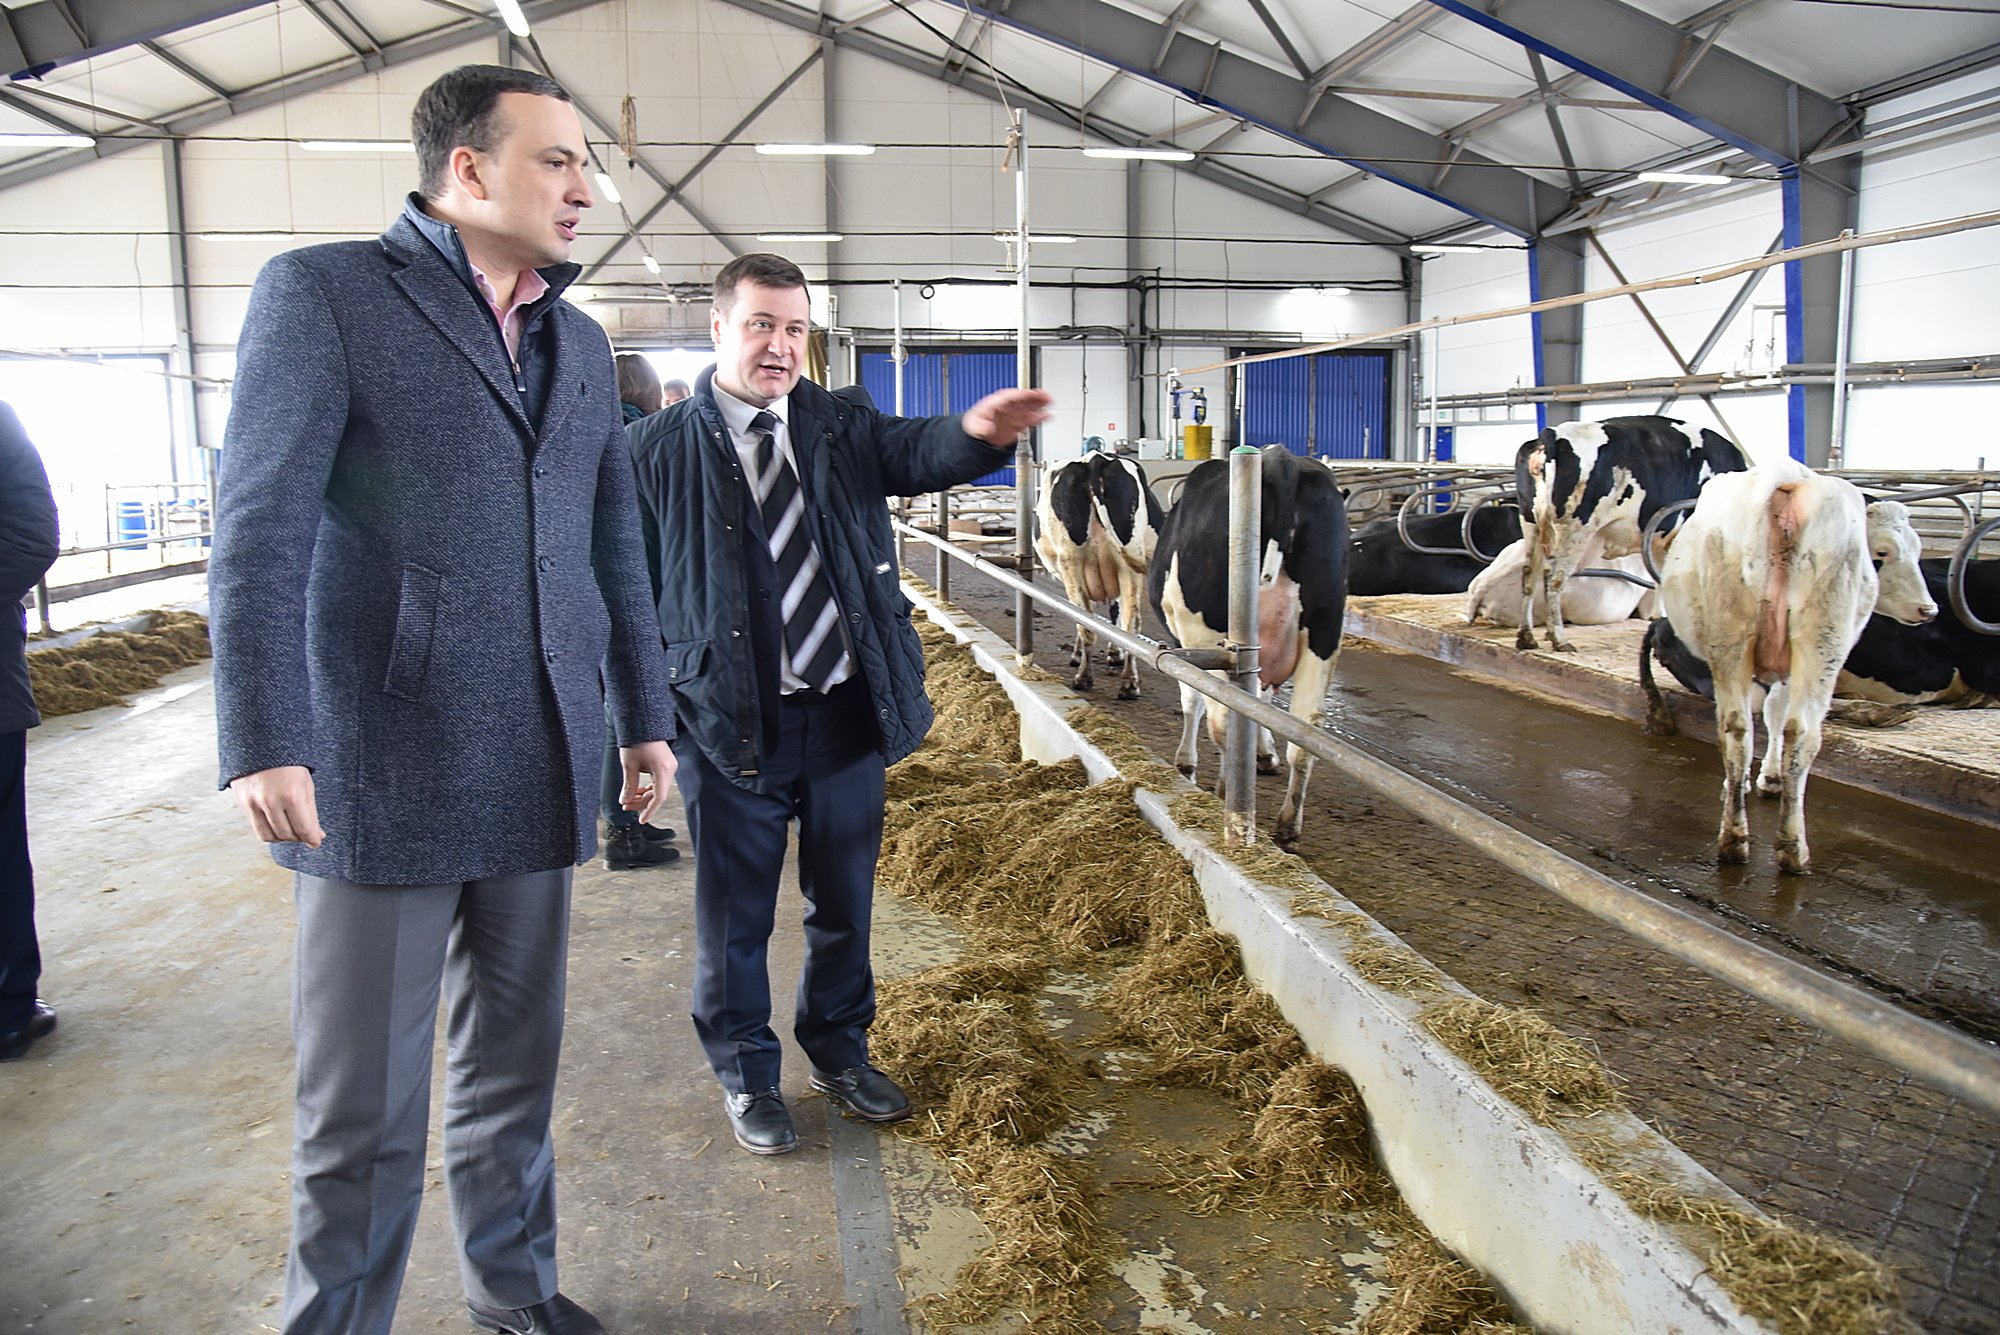 Уральский агрокомплекс планирует вдвое увеличить производство молока и развивать органическое земледелие